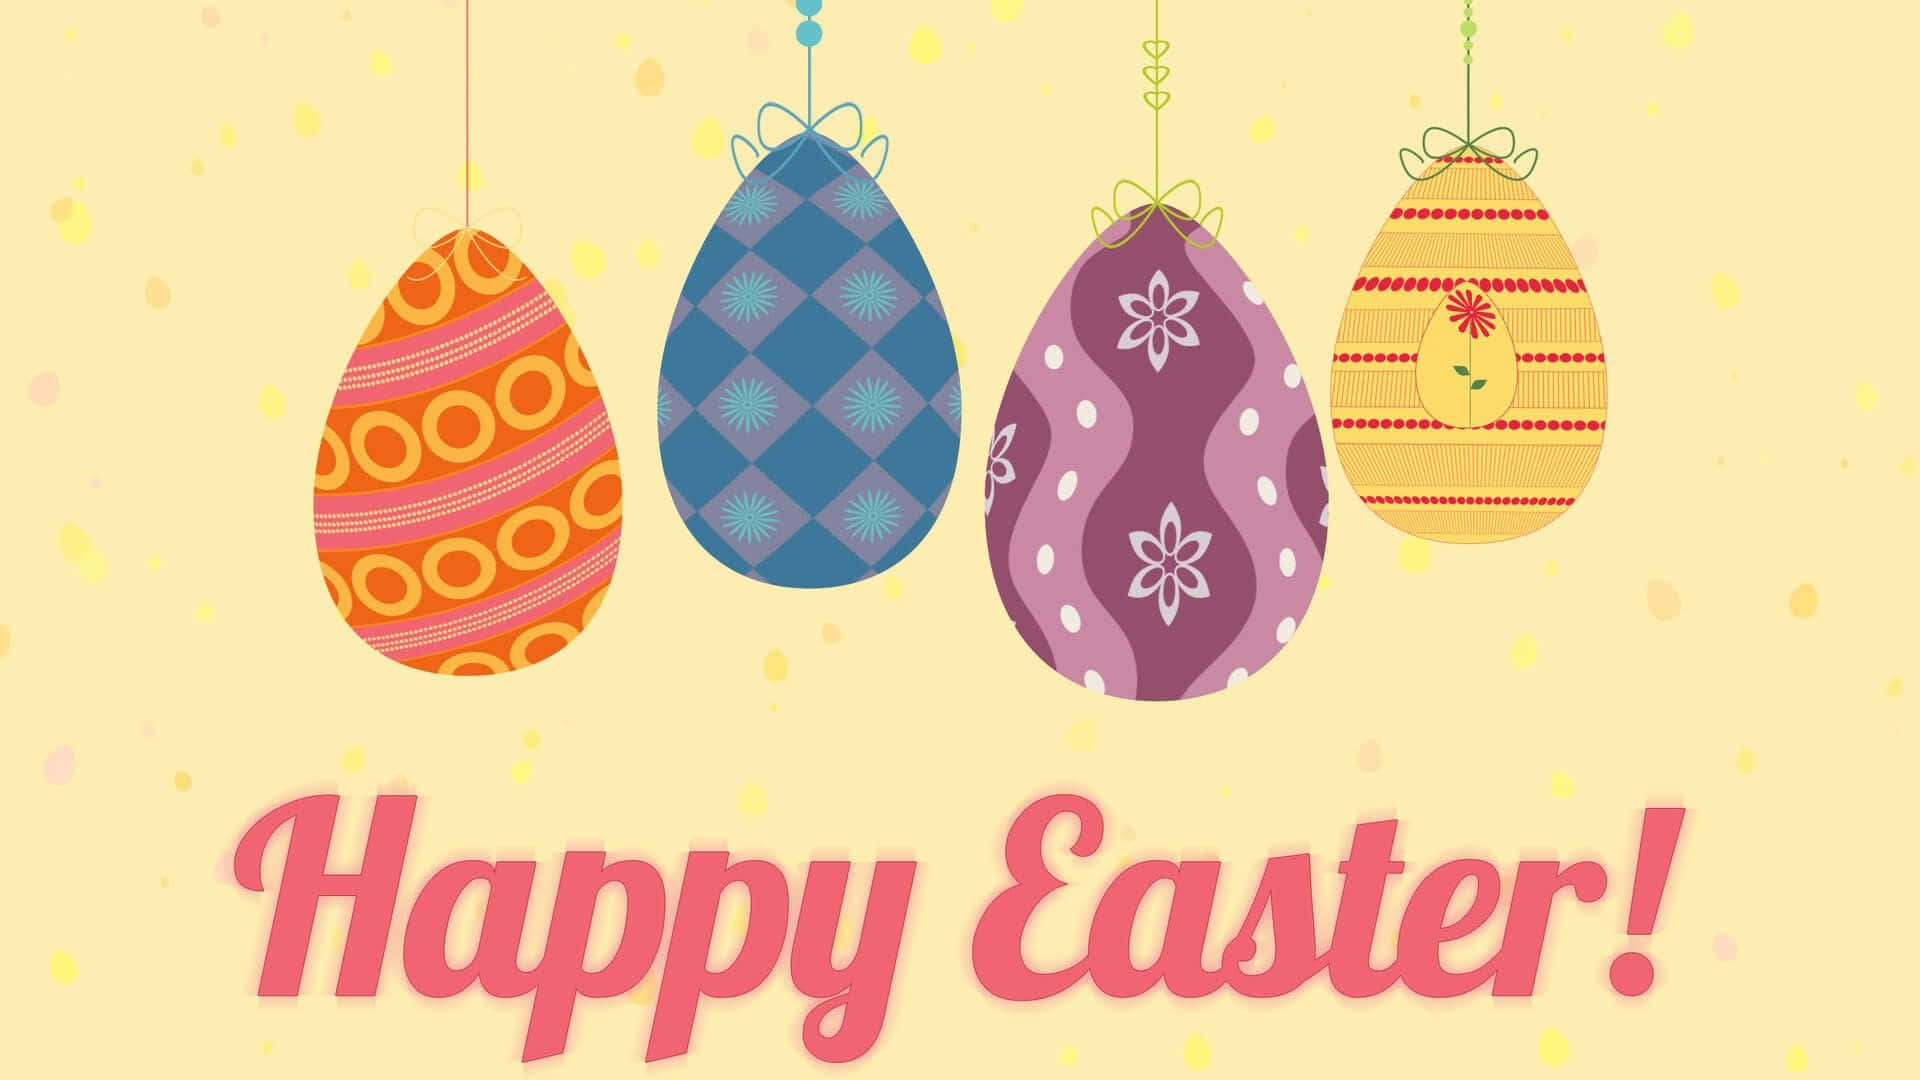 Feiernsie Die Freude Des Osternfestes Mit Wunderschönen Pastelltönen!